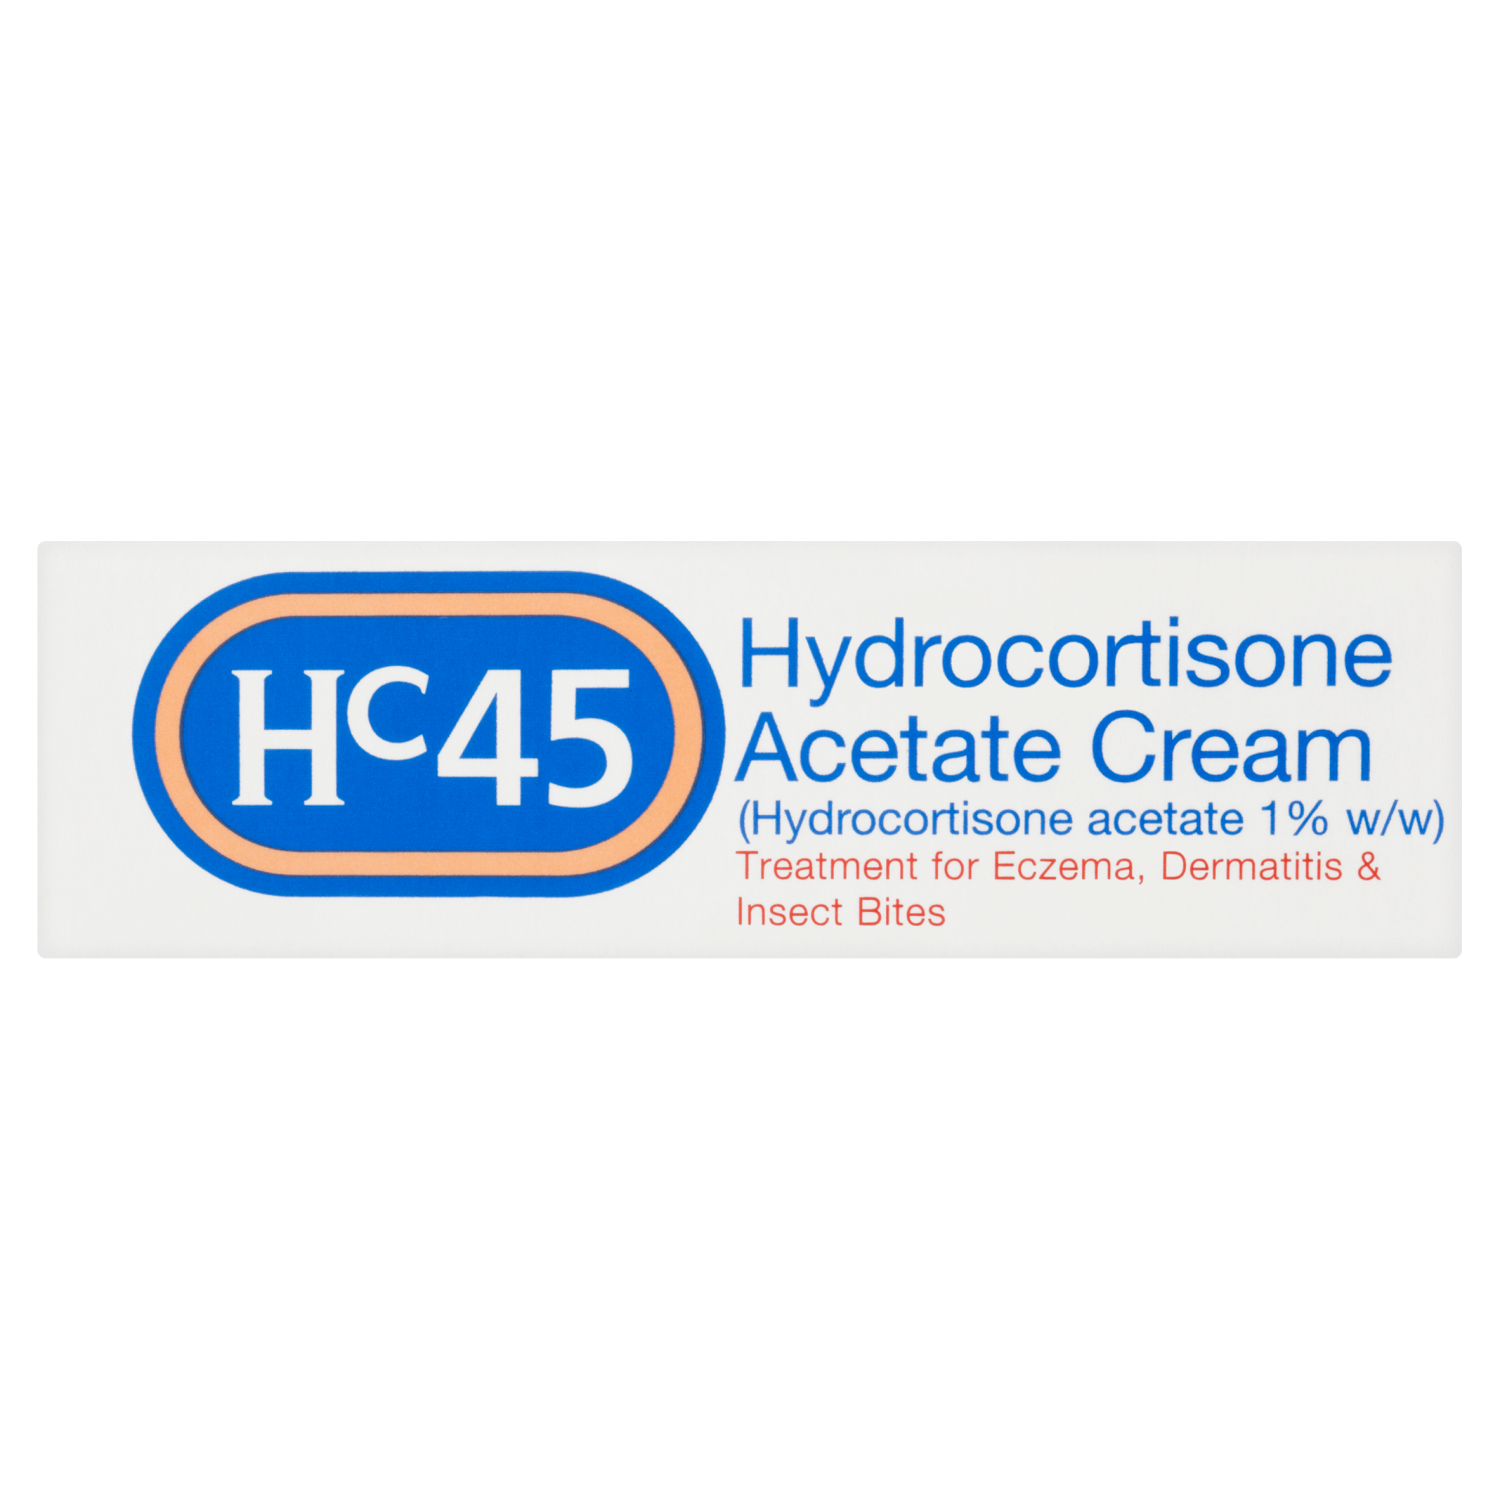 HC45 Hydrocortisone Cream 15g